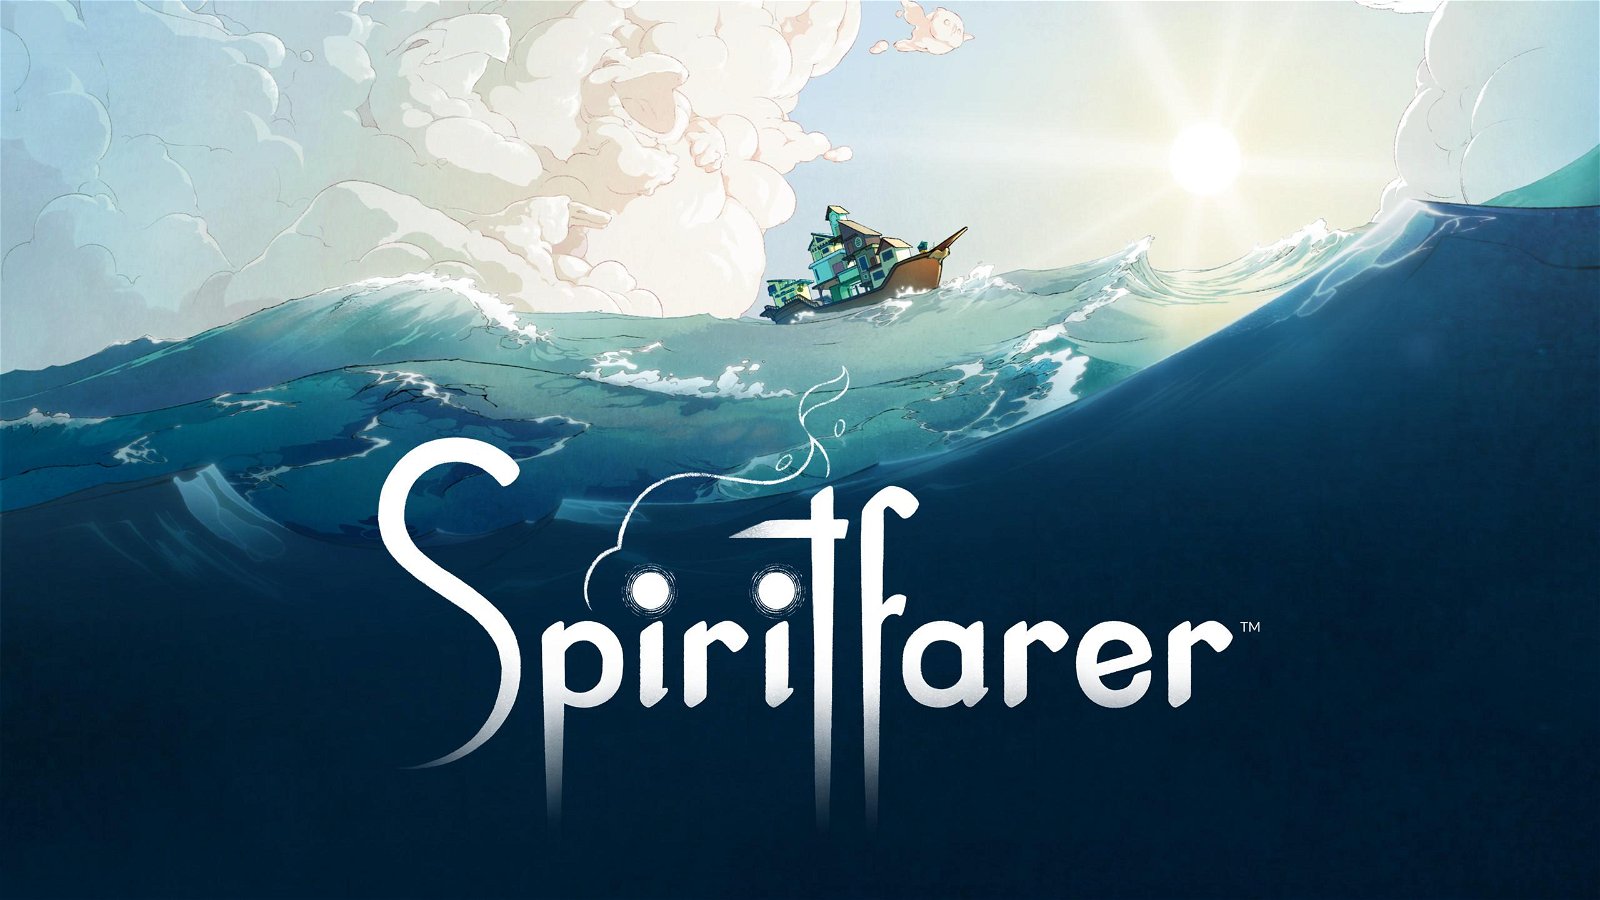 Spiritfarer, traghettatori di anime  - Provato